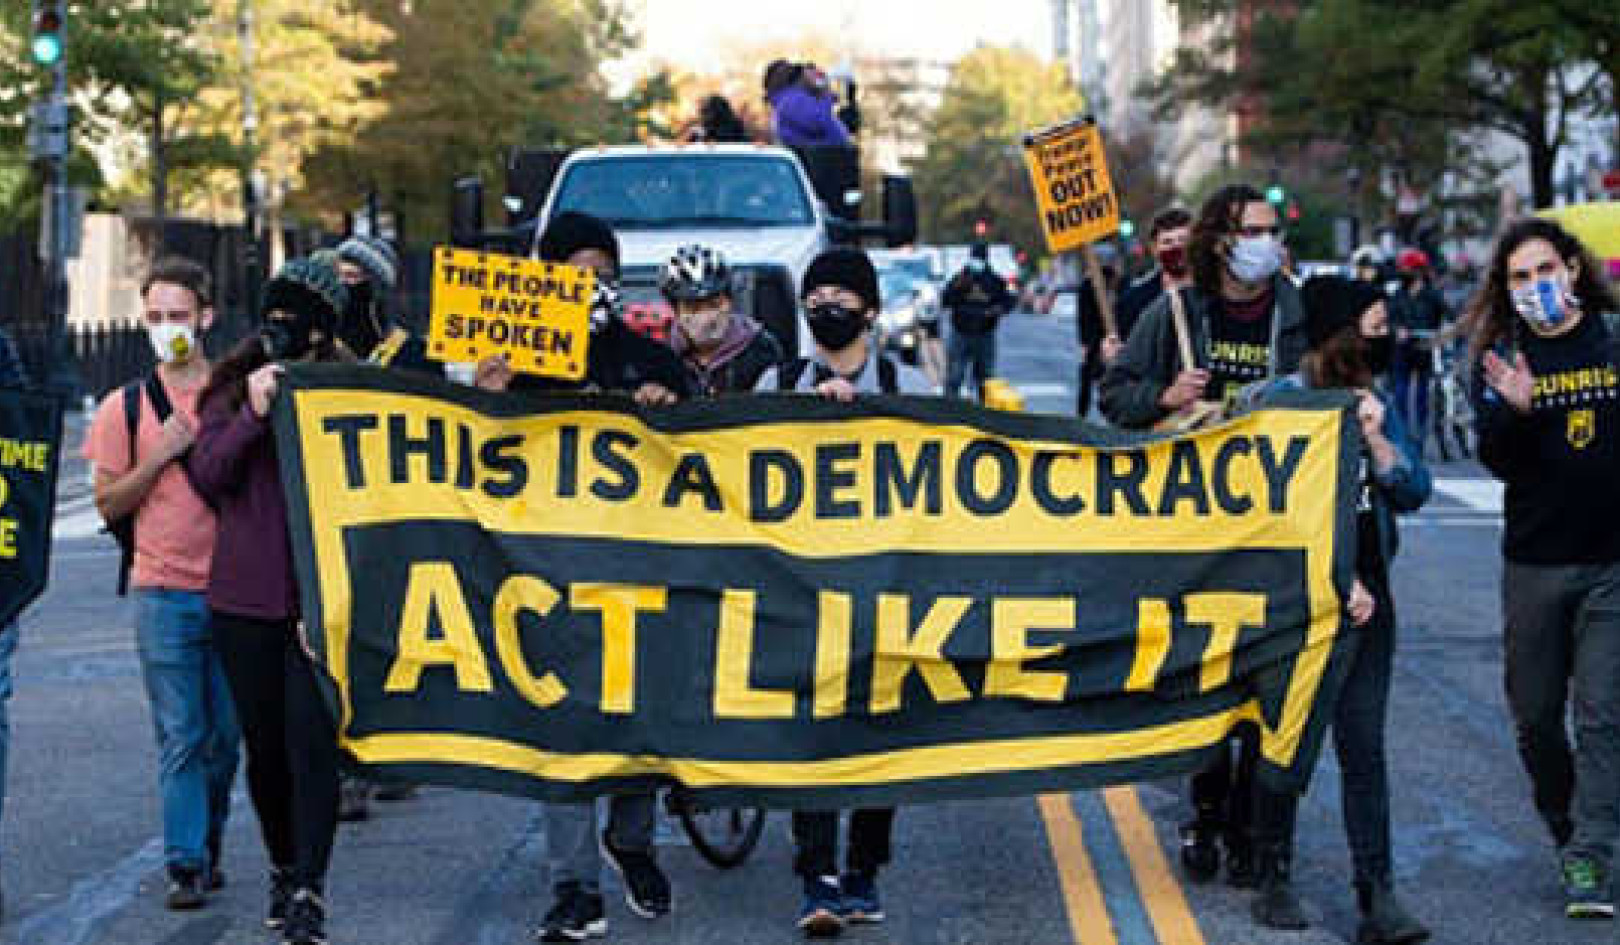 אמריקה מפוצלת מחפשת בהירות מוסרית במלחמה נגד הדמוקרטיה